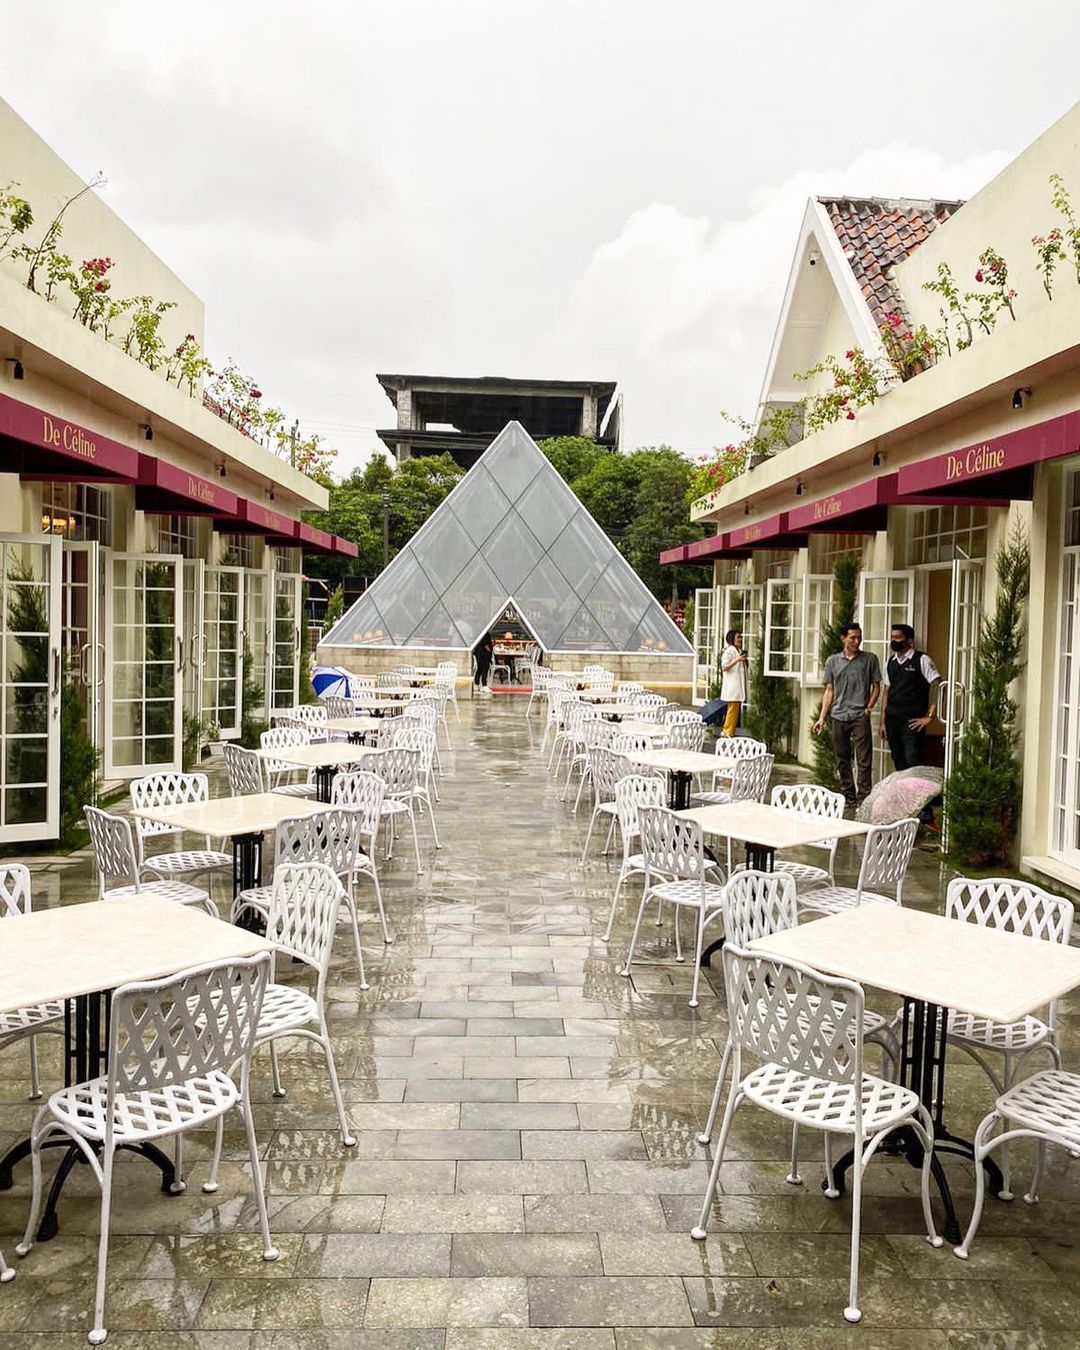 5 Kafe Cantik dan Instagramable yang Lagi Hits di Jogja